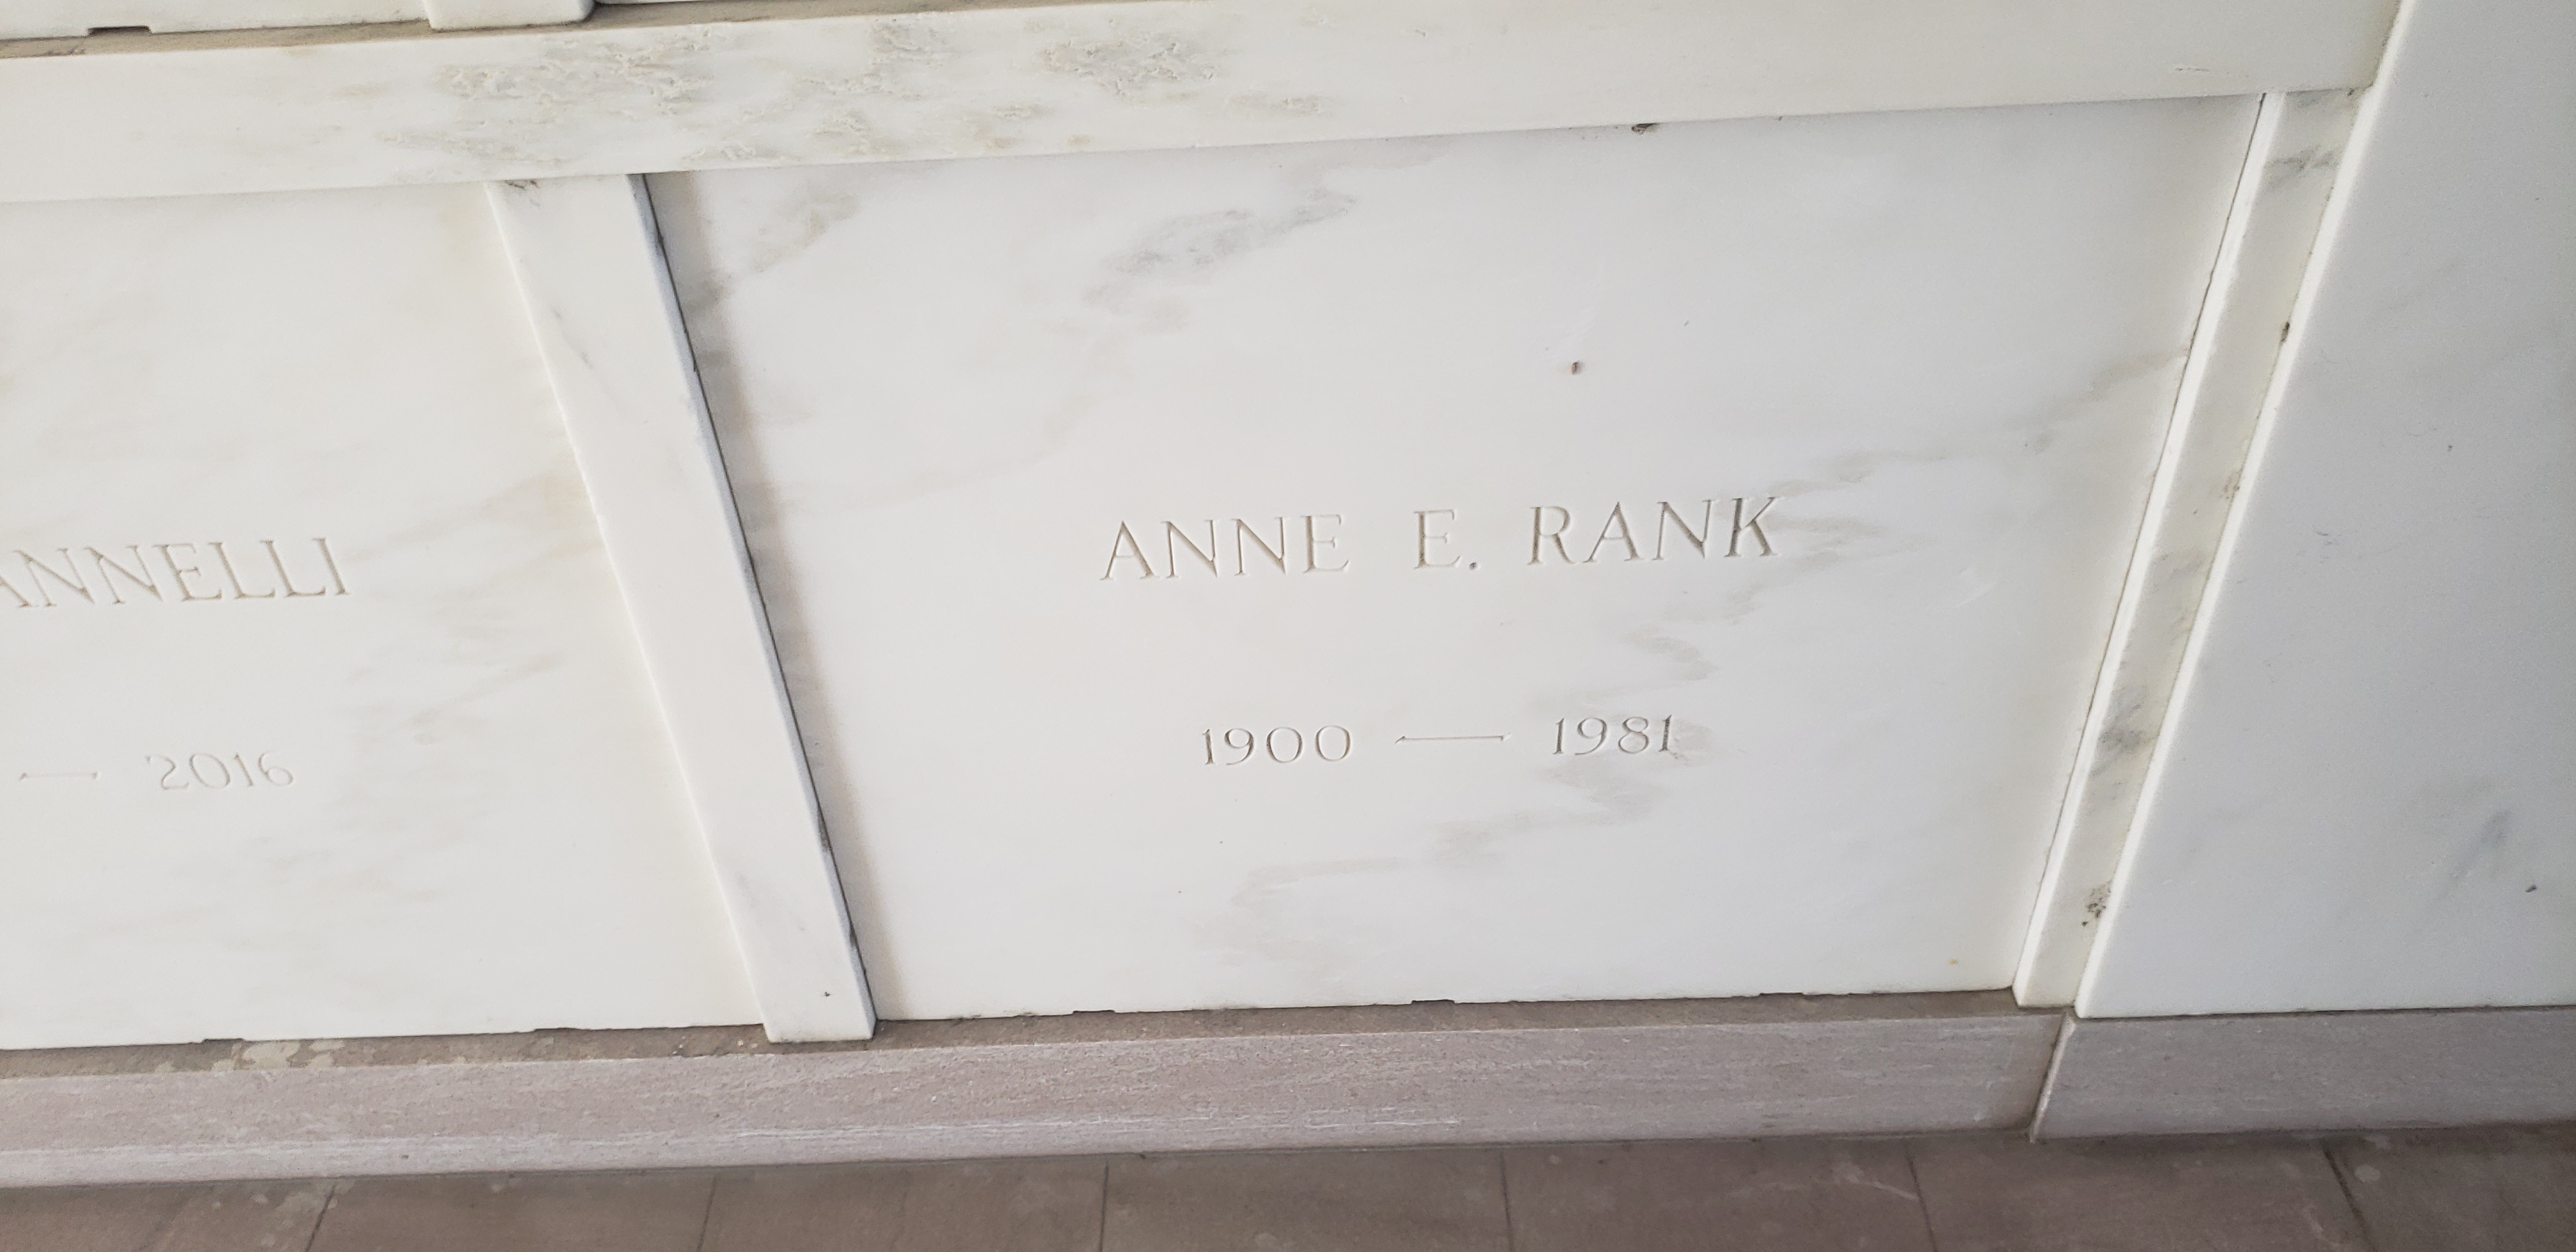 Anne E Rank